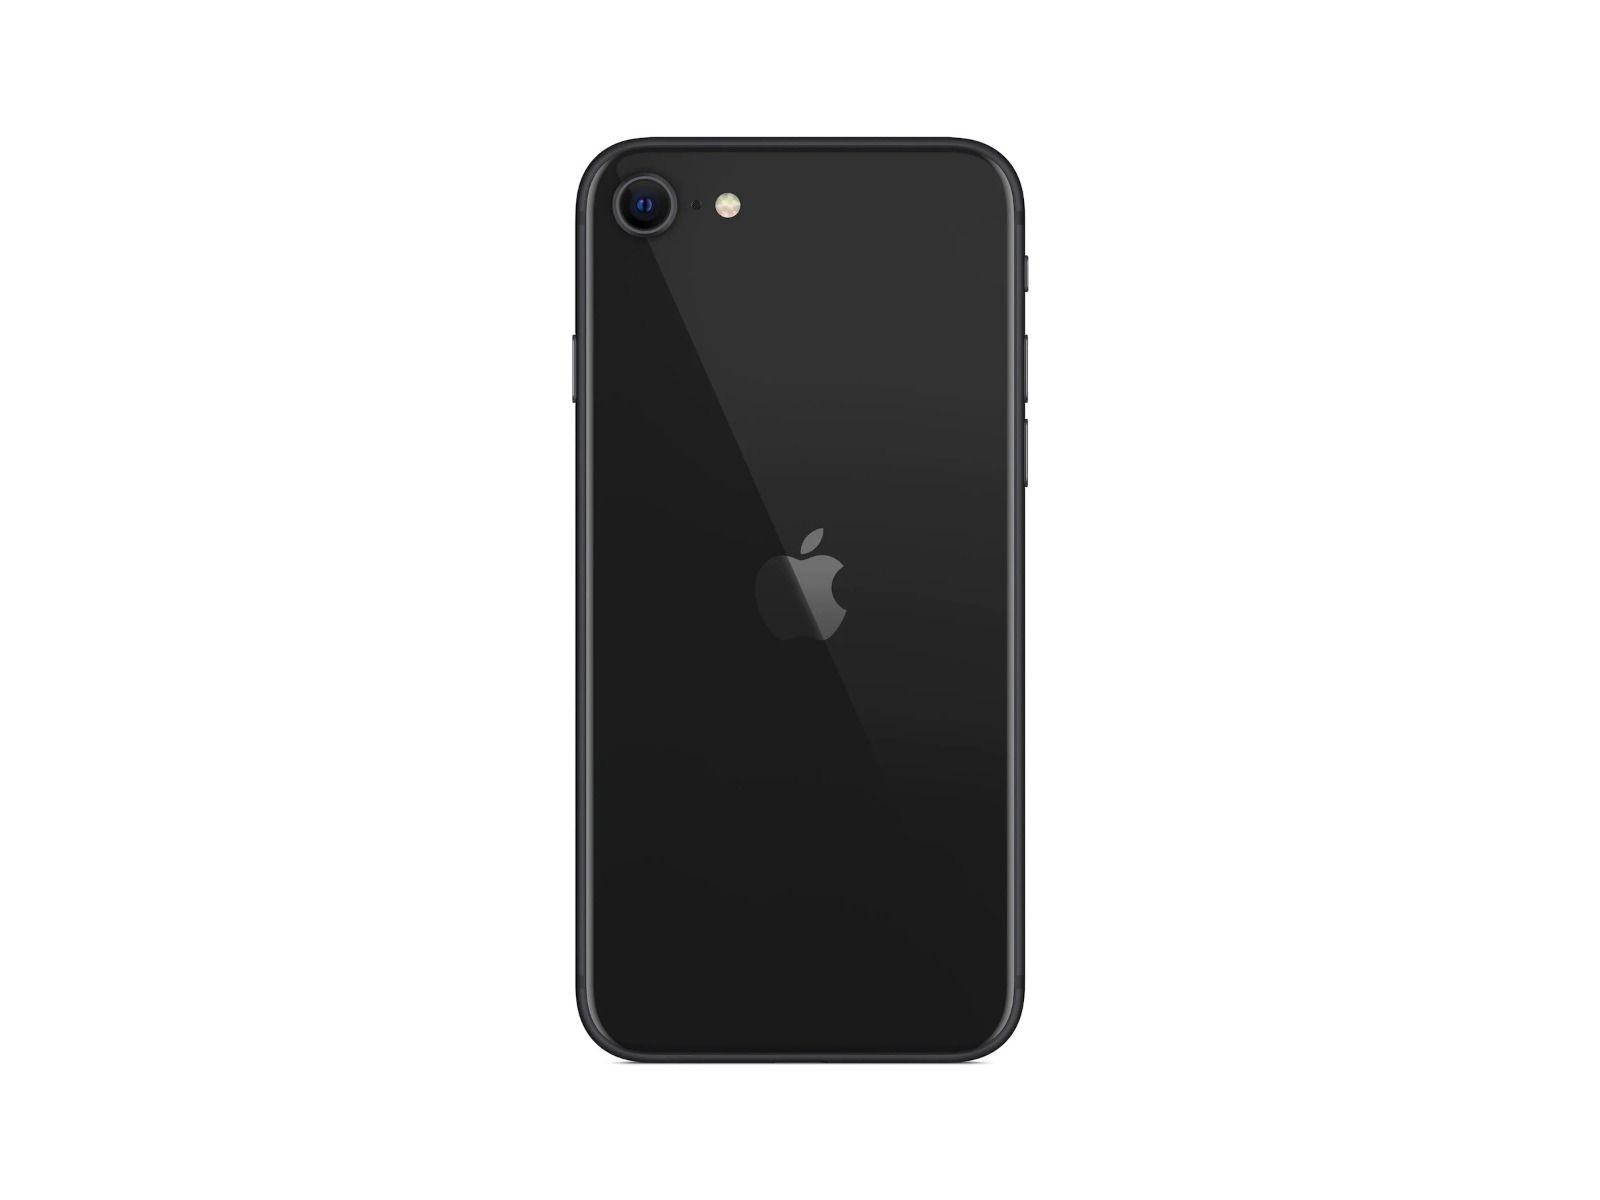 iPhone SE 64GB Black